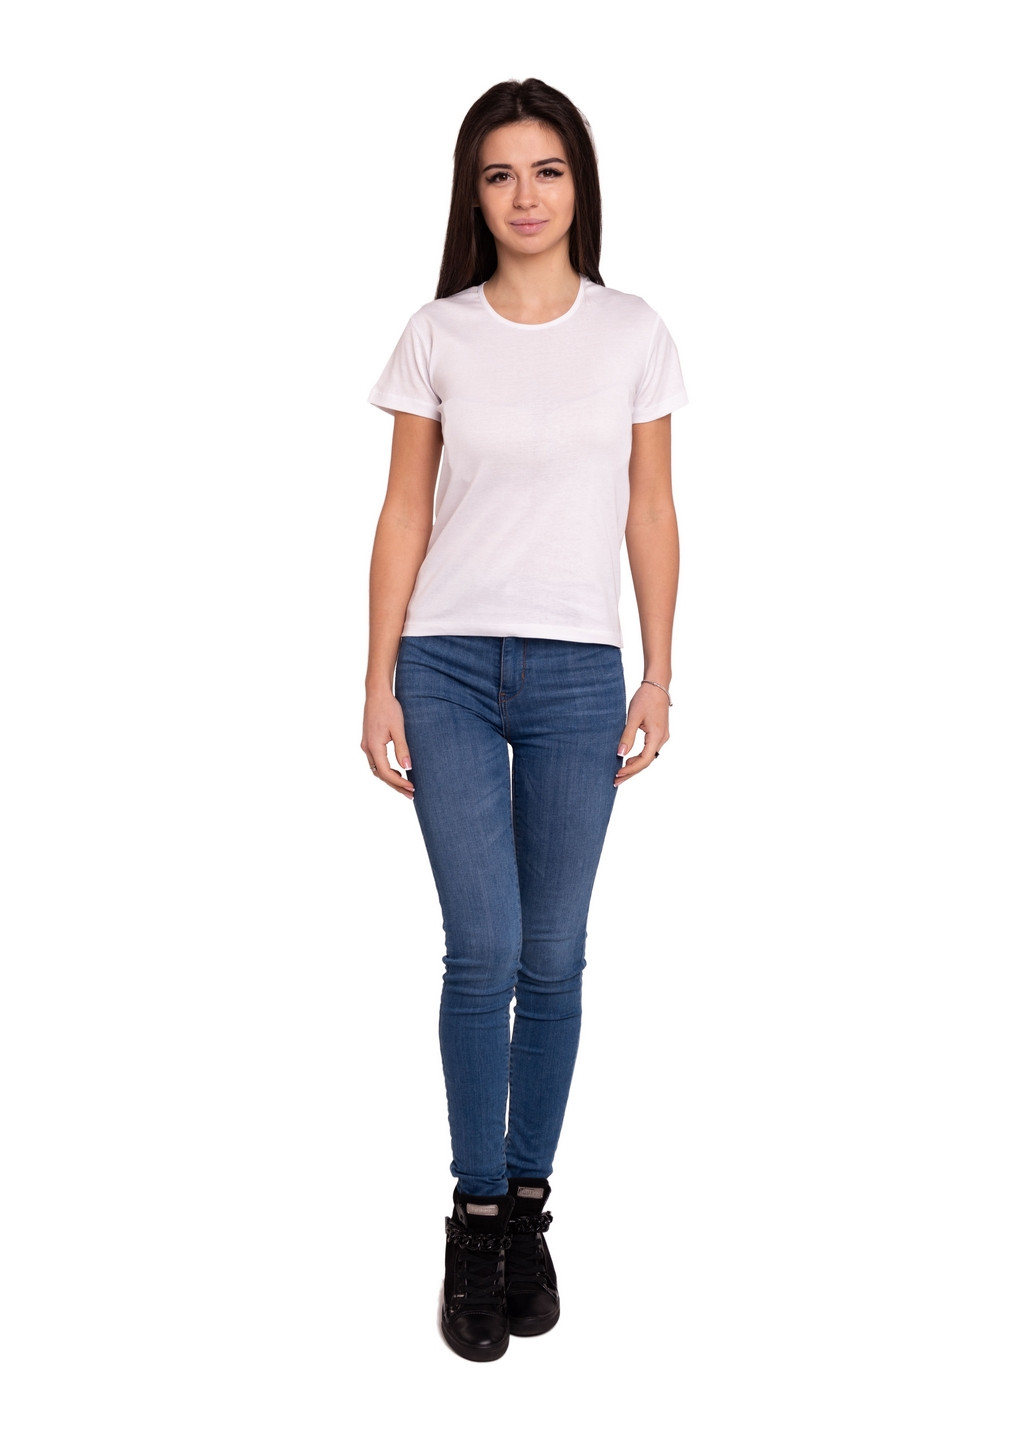 Белая всесезон футболка женская Наталюкс 21-2302